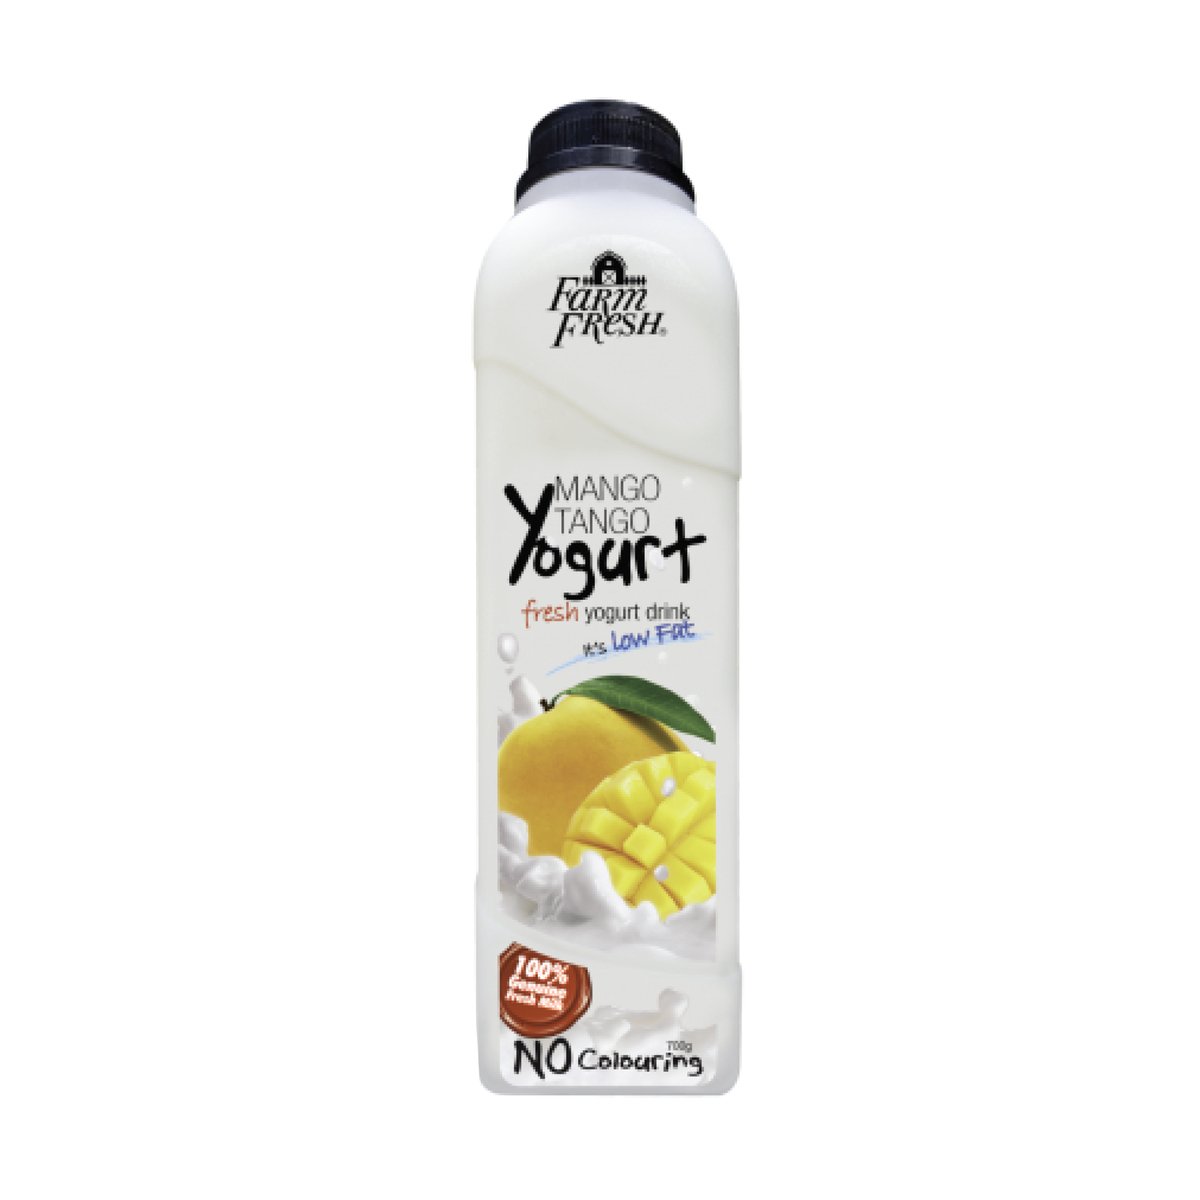 Farm Fresh Yogurt Drink Mango Tango 700g